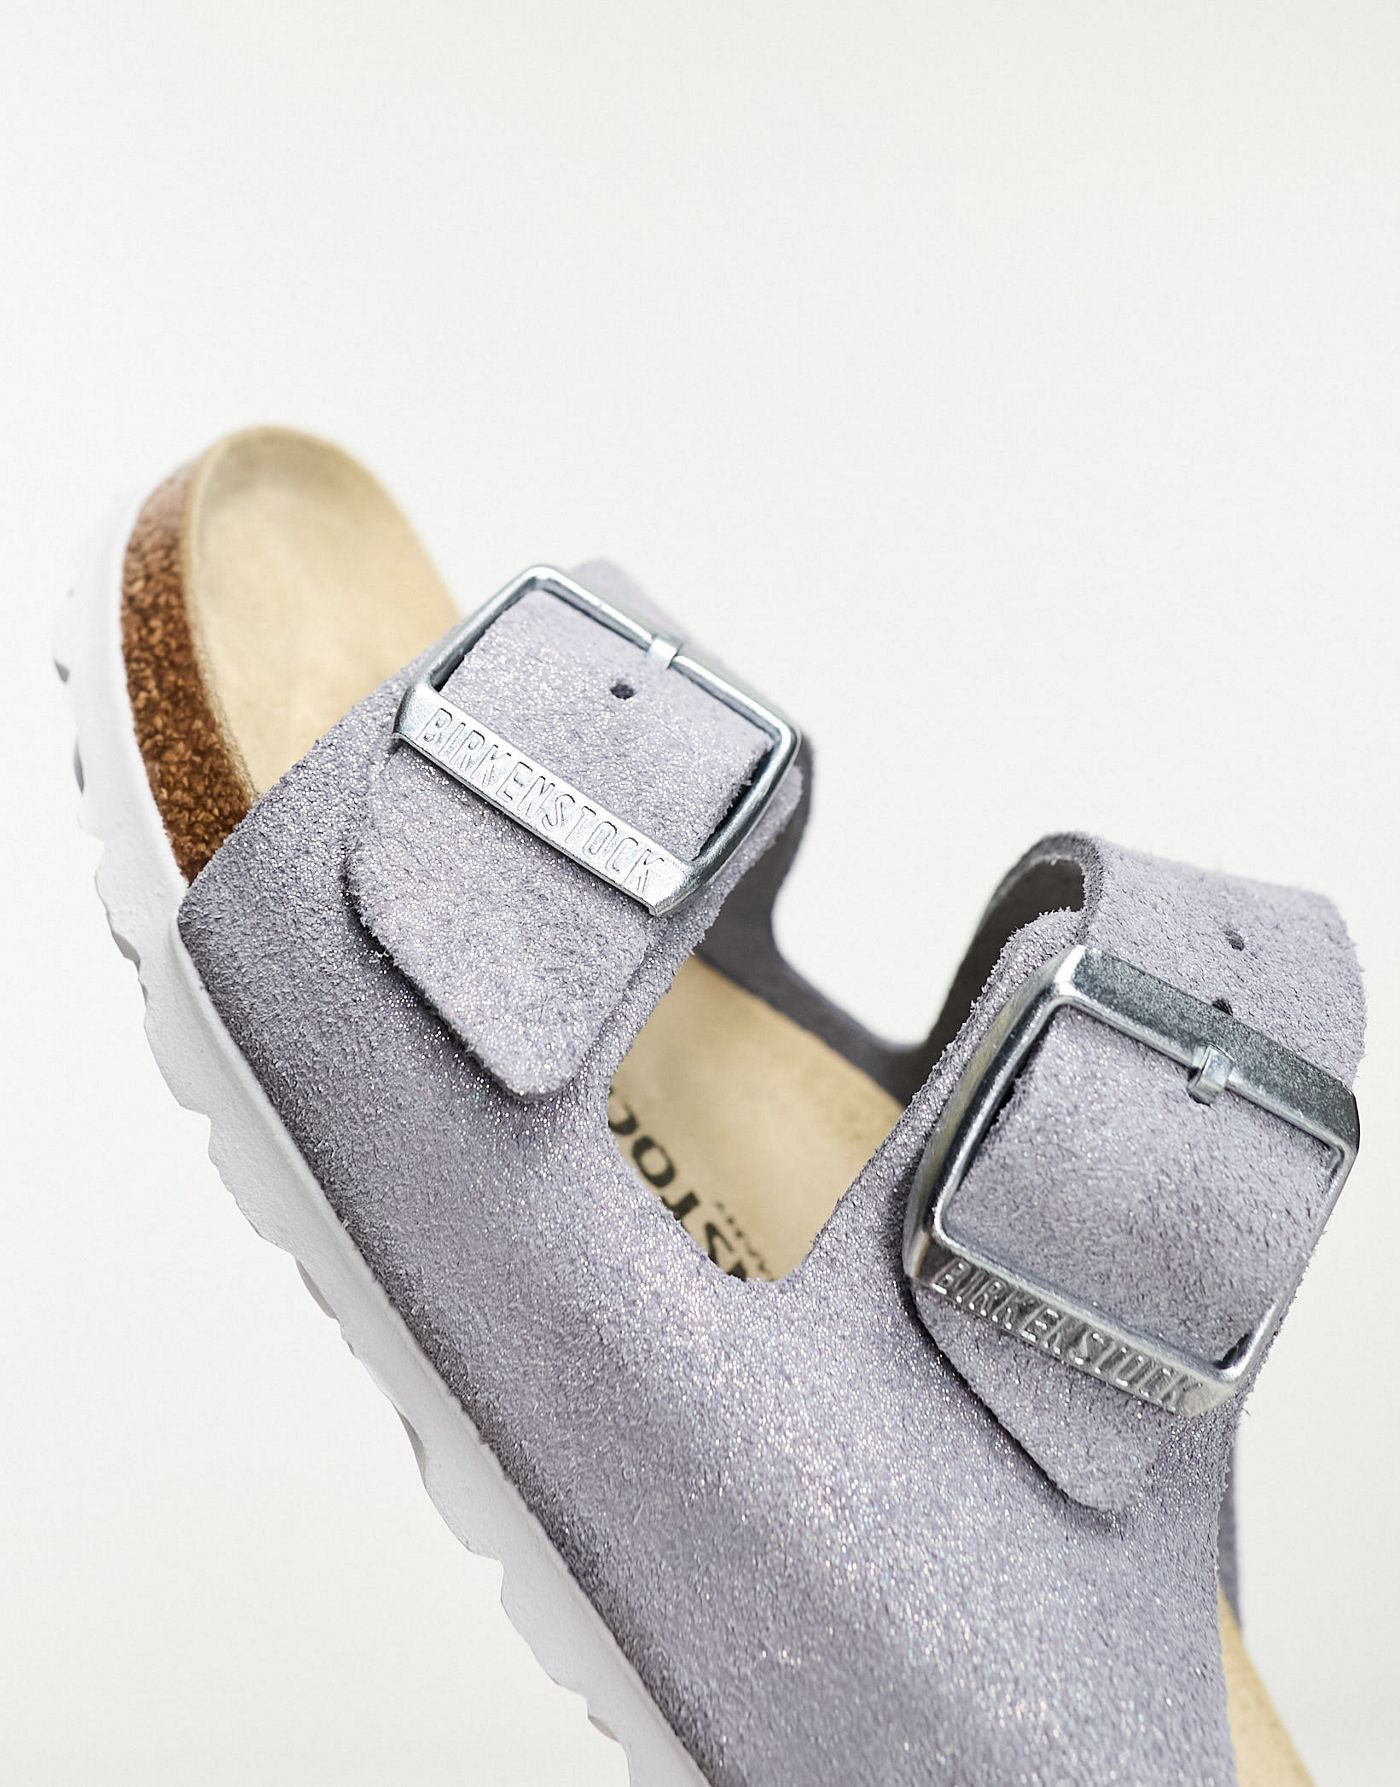 Birkenstock Arizona sandals in shimmer purple suede exclusive to ASOS